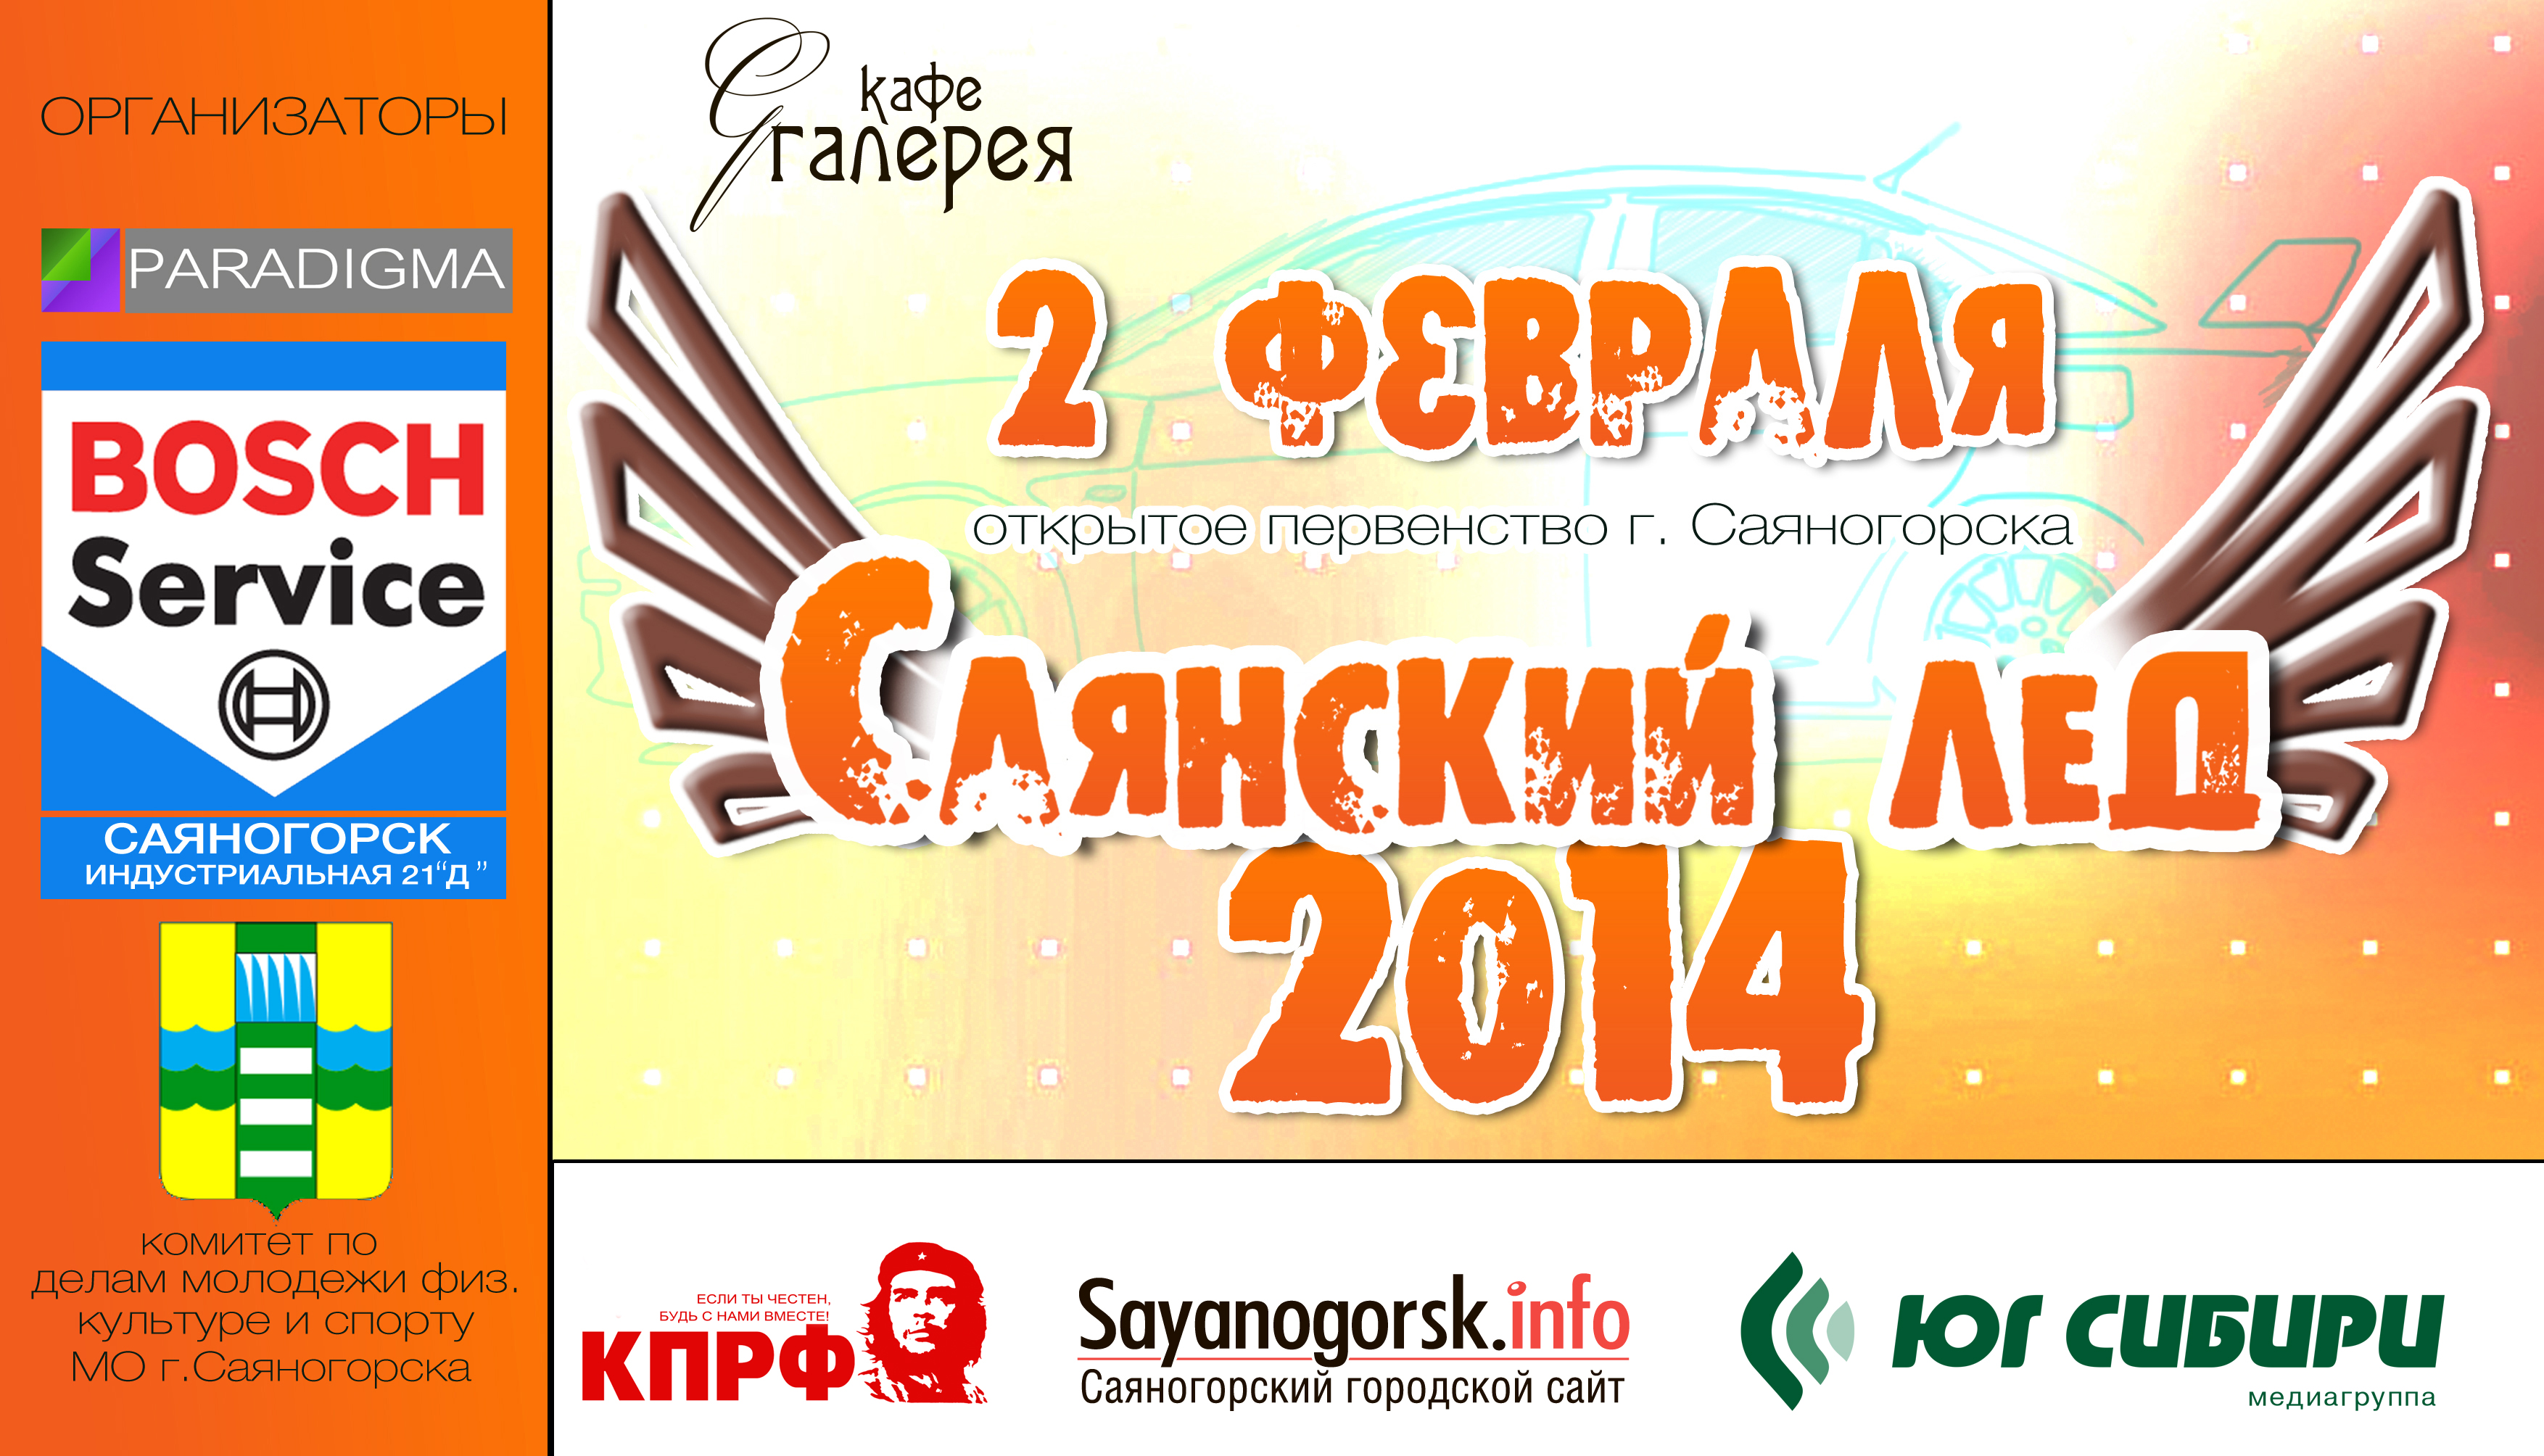 Саяногорск Инфо - logo-2014-new.jpg, Скачано: 1518